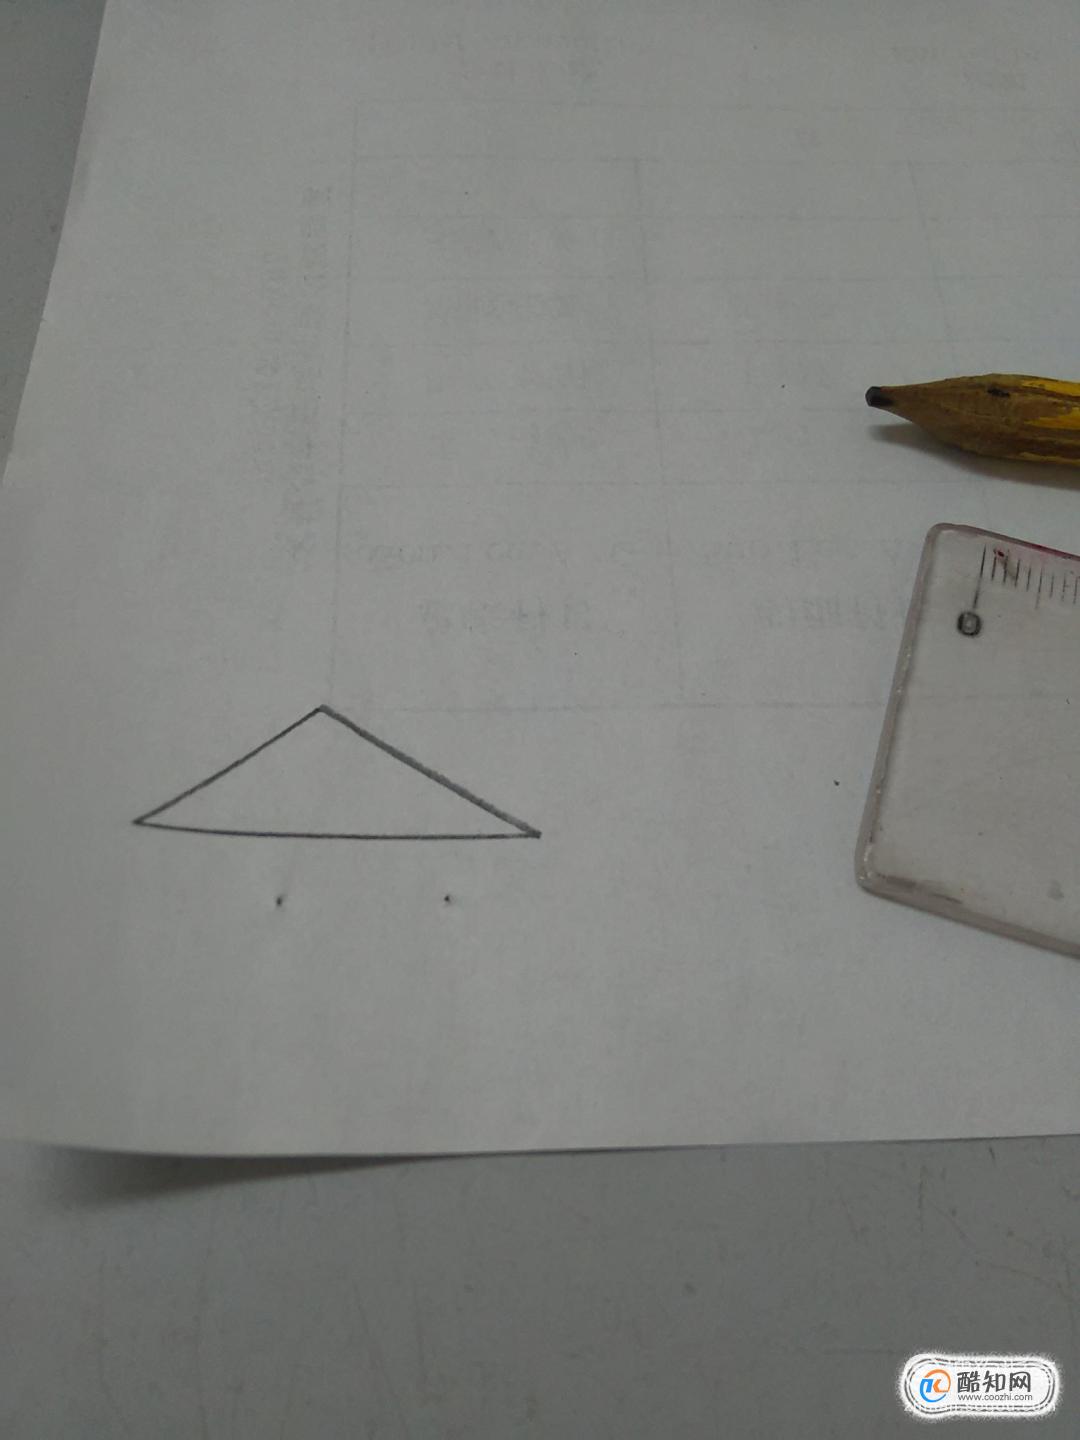 如何计算三角形面积